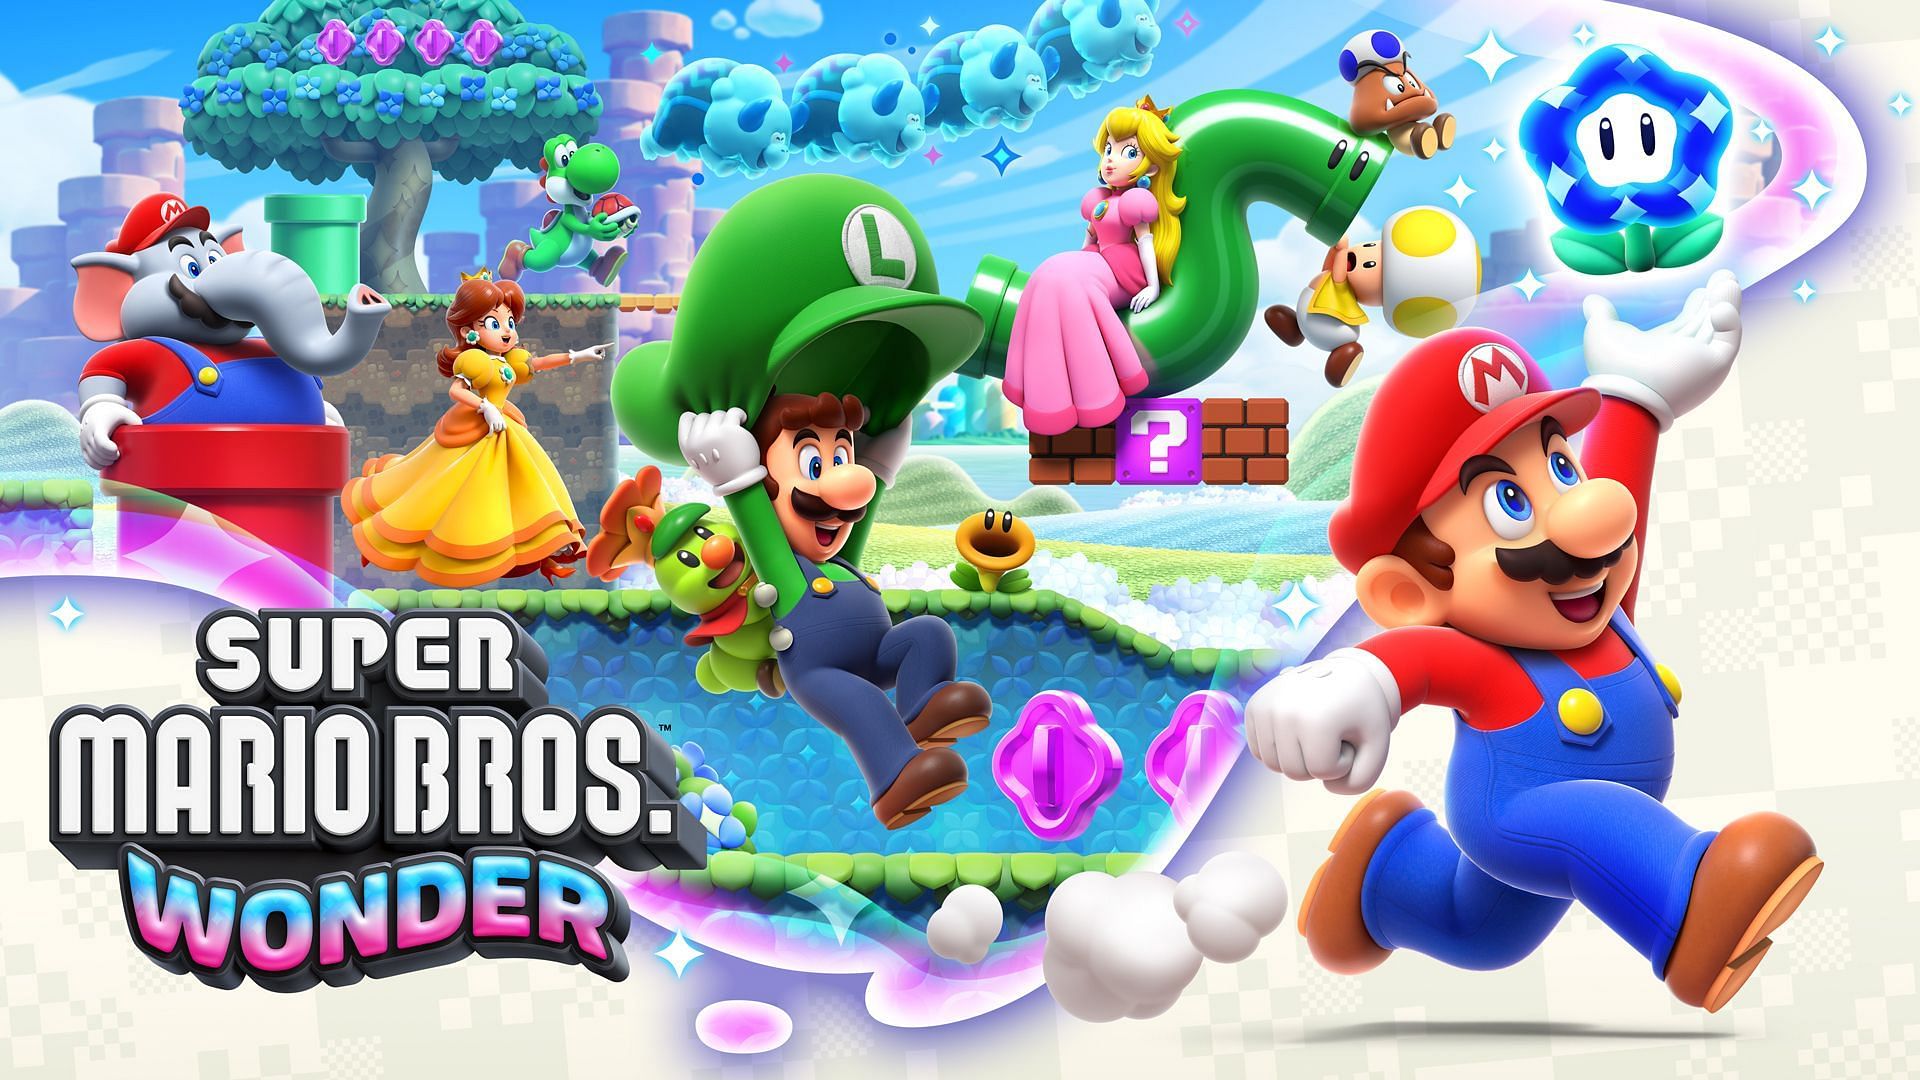 Super Mario Bros. Wonder announced for Nintendo Switch (Image via Nintendo)